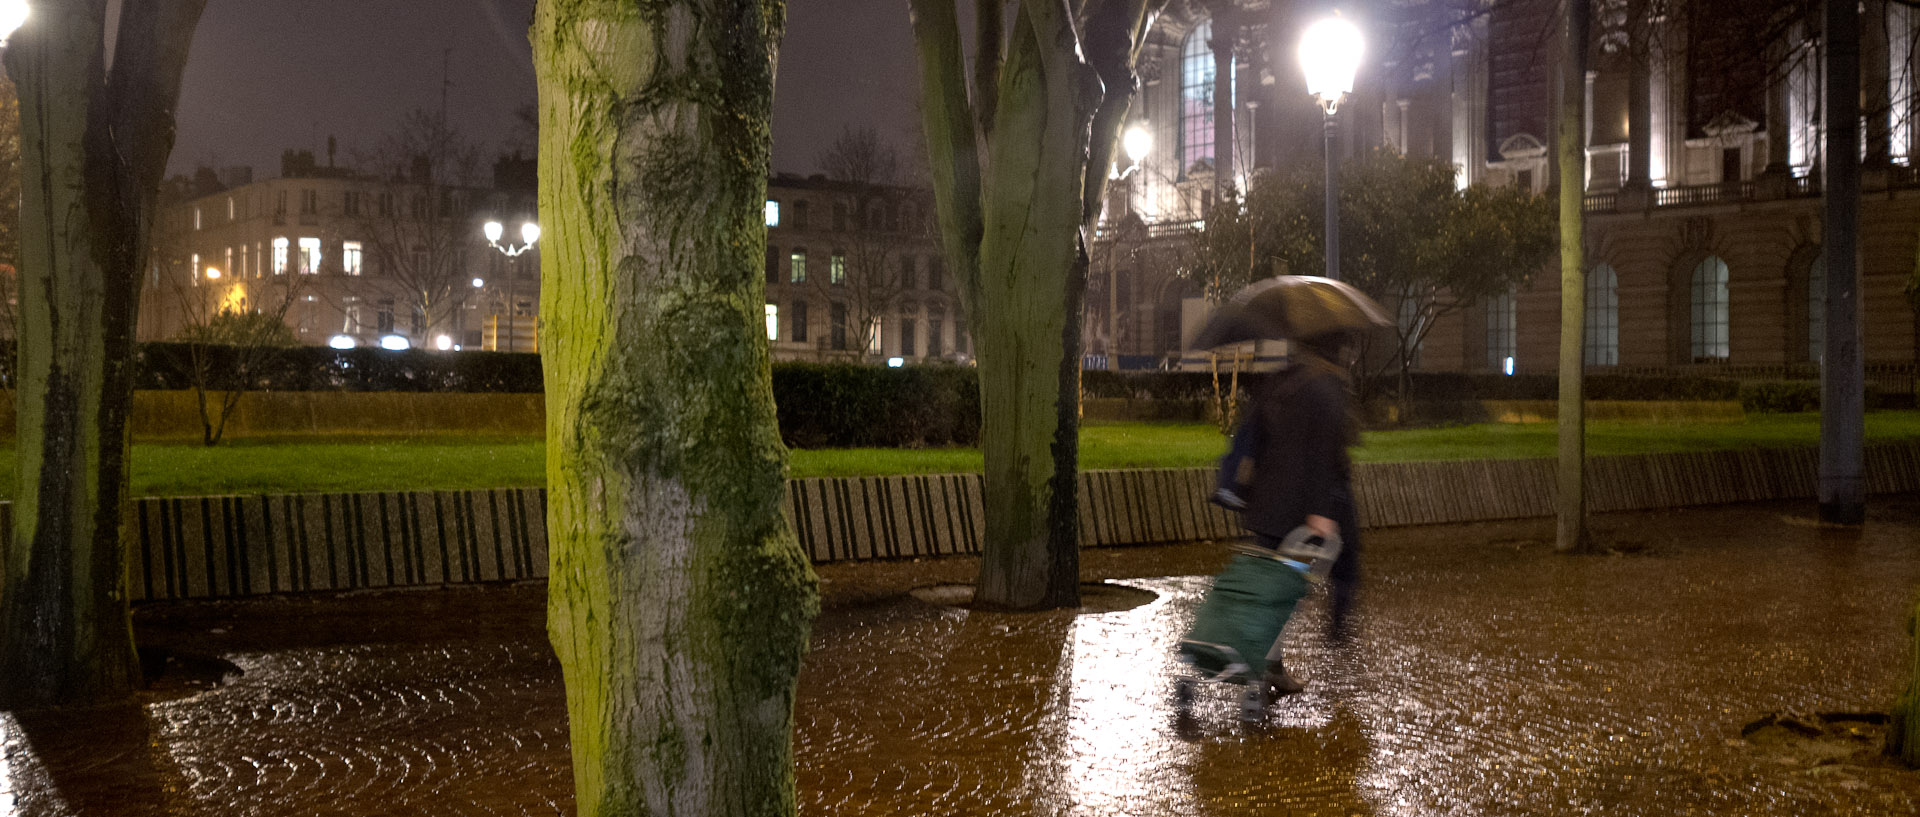 Femme tirant un caddie, devant le Palais des Beaux Arts, place de la République, à Lille.